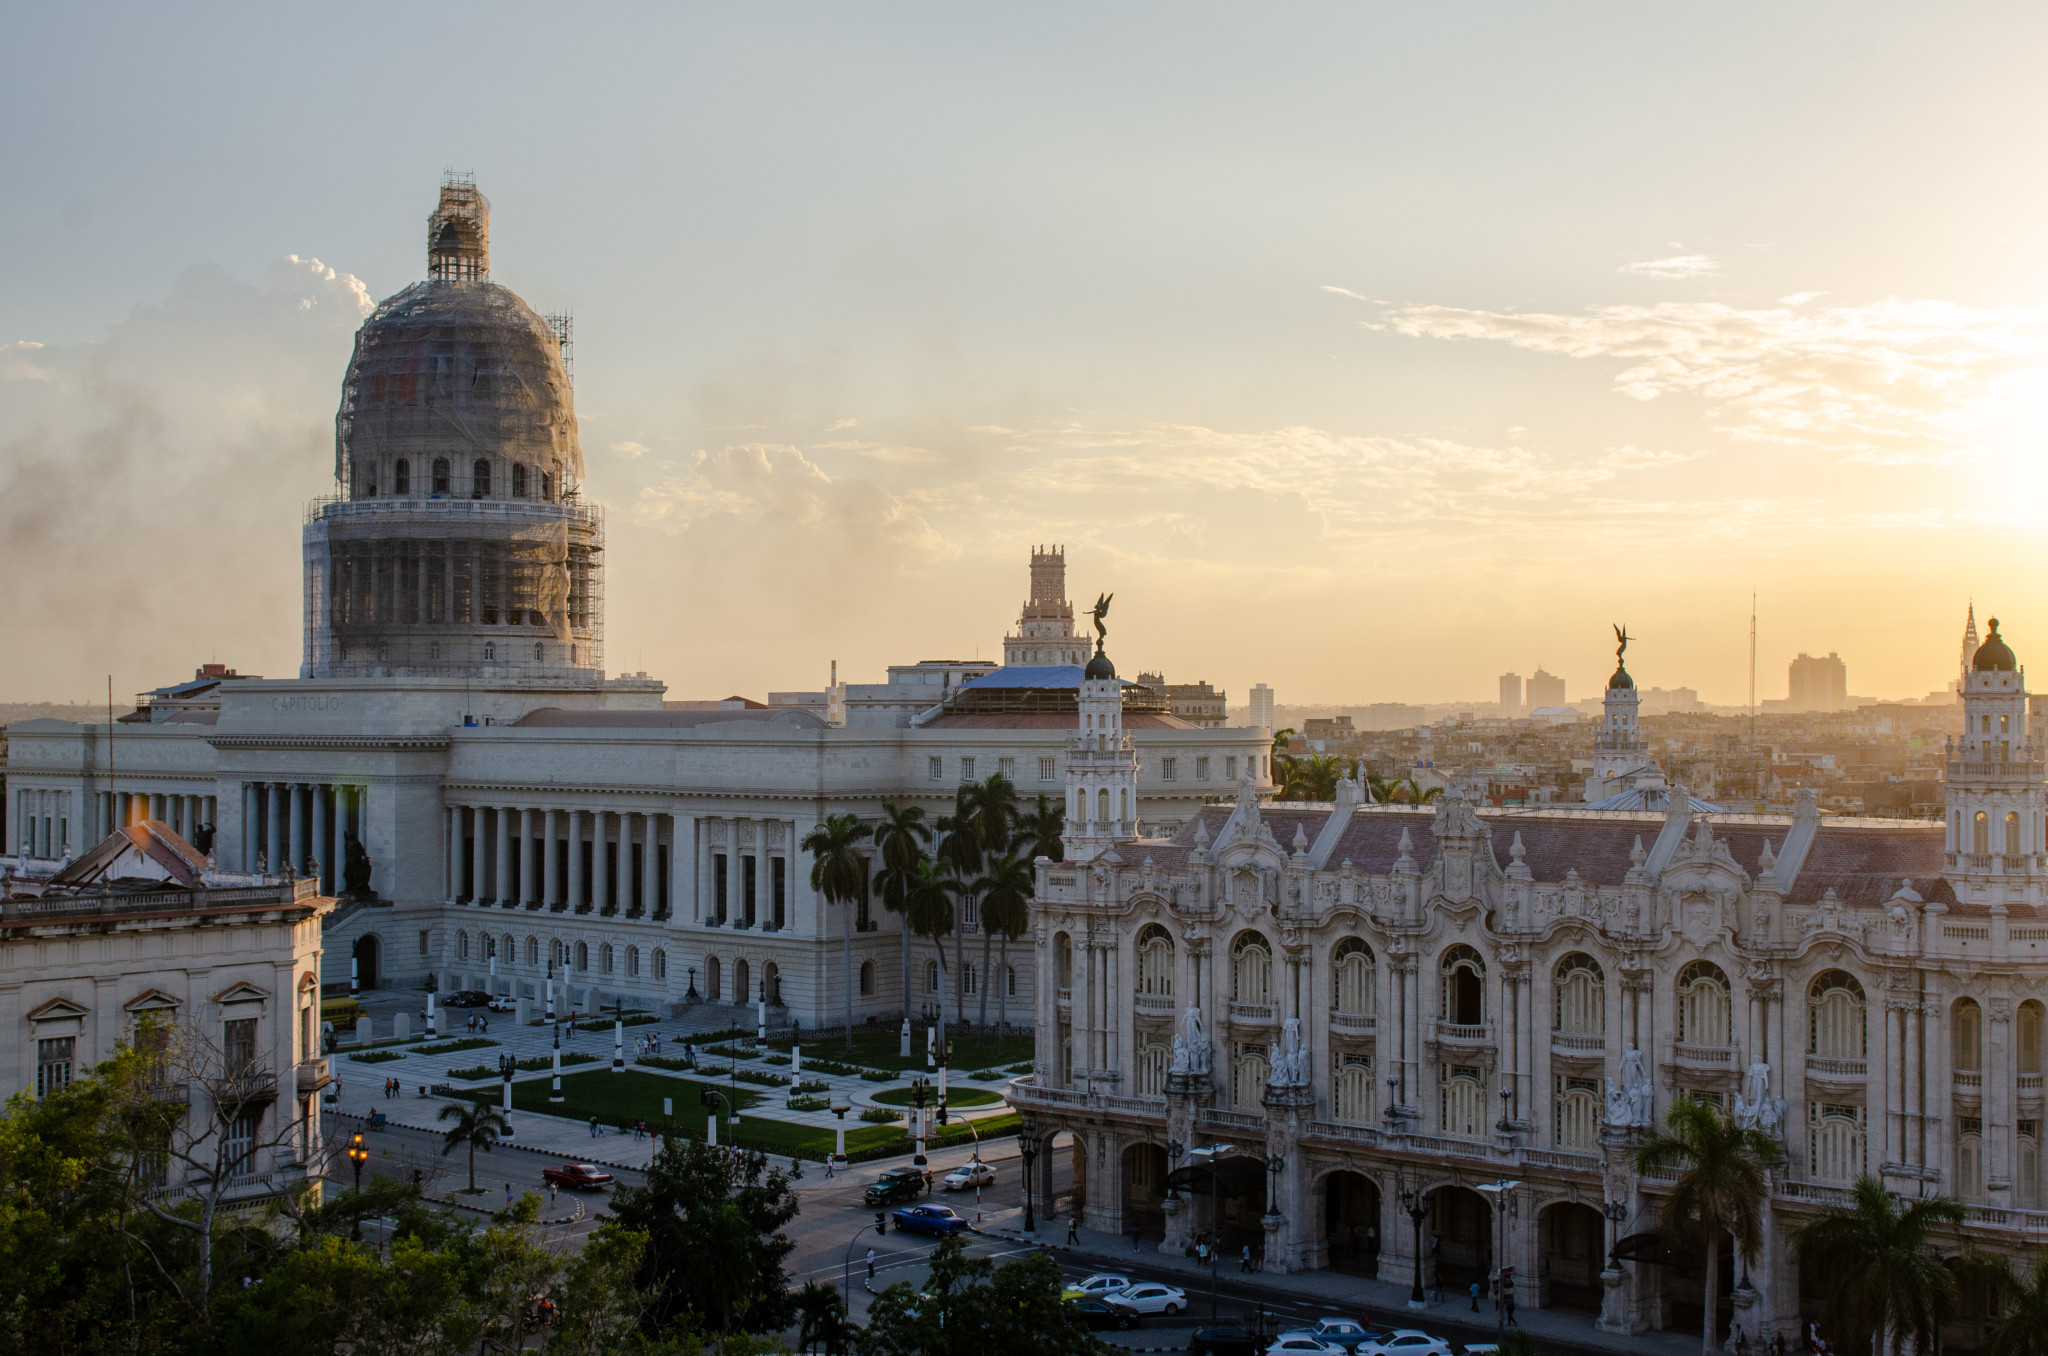 Das Capitol gehört zu den markanten Havanna Sehenswürdigkeiten